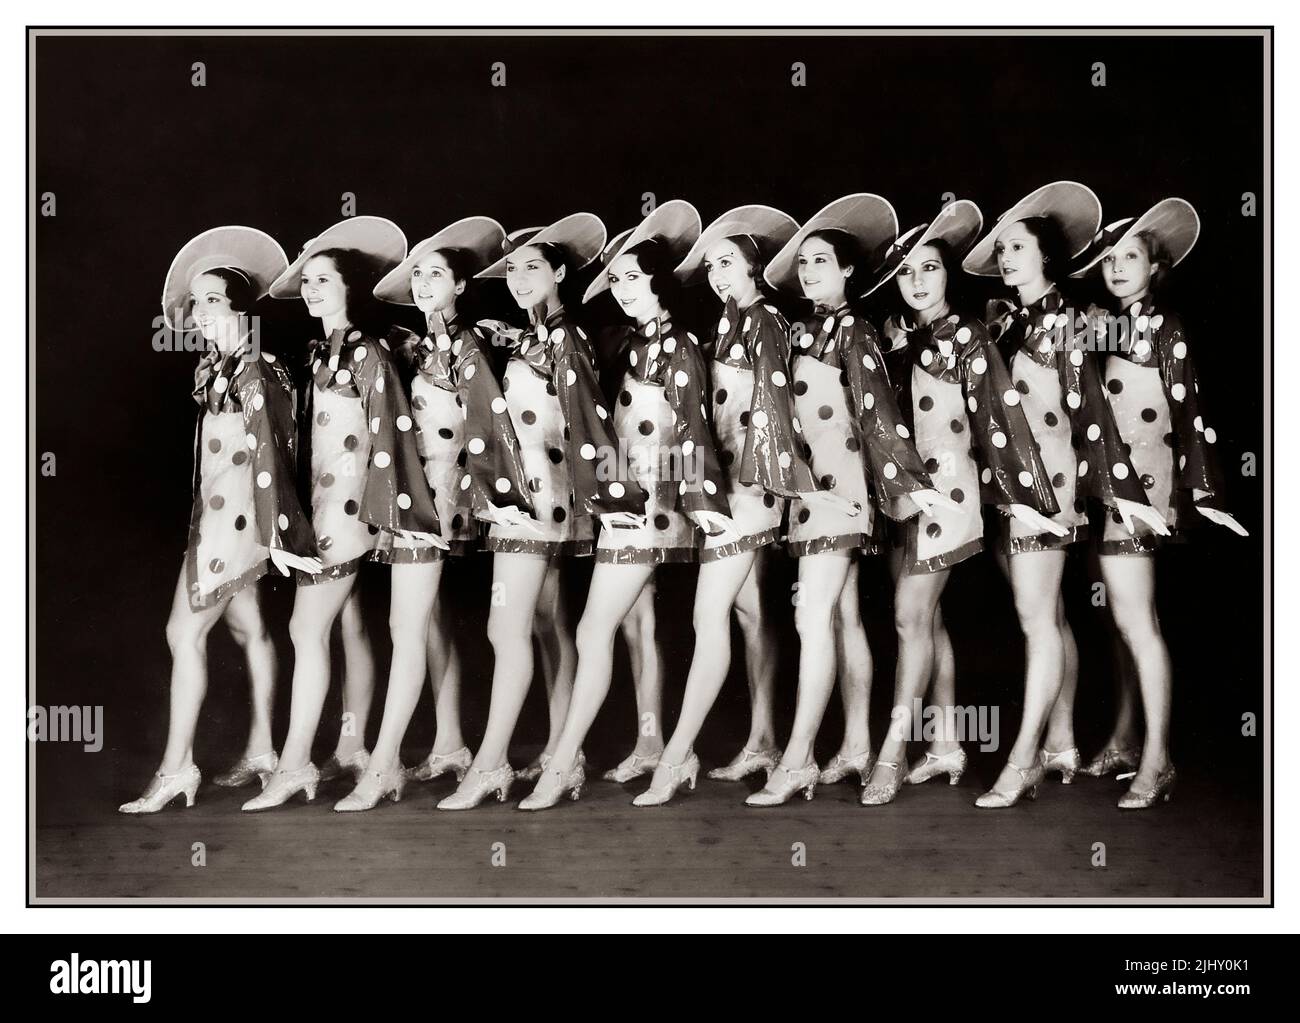 1930s Folies Bergère Showgirls posent sur scène pour une photo promotionnelle. Toutes les belles filles sélectionnées à la main, y compris la célèbre ballerine bulgare de Feo Mustakova, dansant pour l'un des plus grands spectacles de cabaret Bel Epoque de Paris. Rue Richer Paris France 1934 Banque D'Images